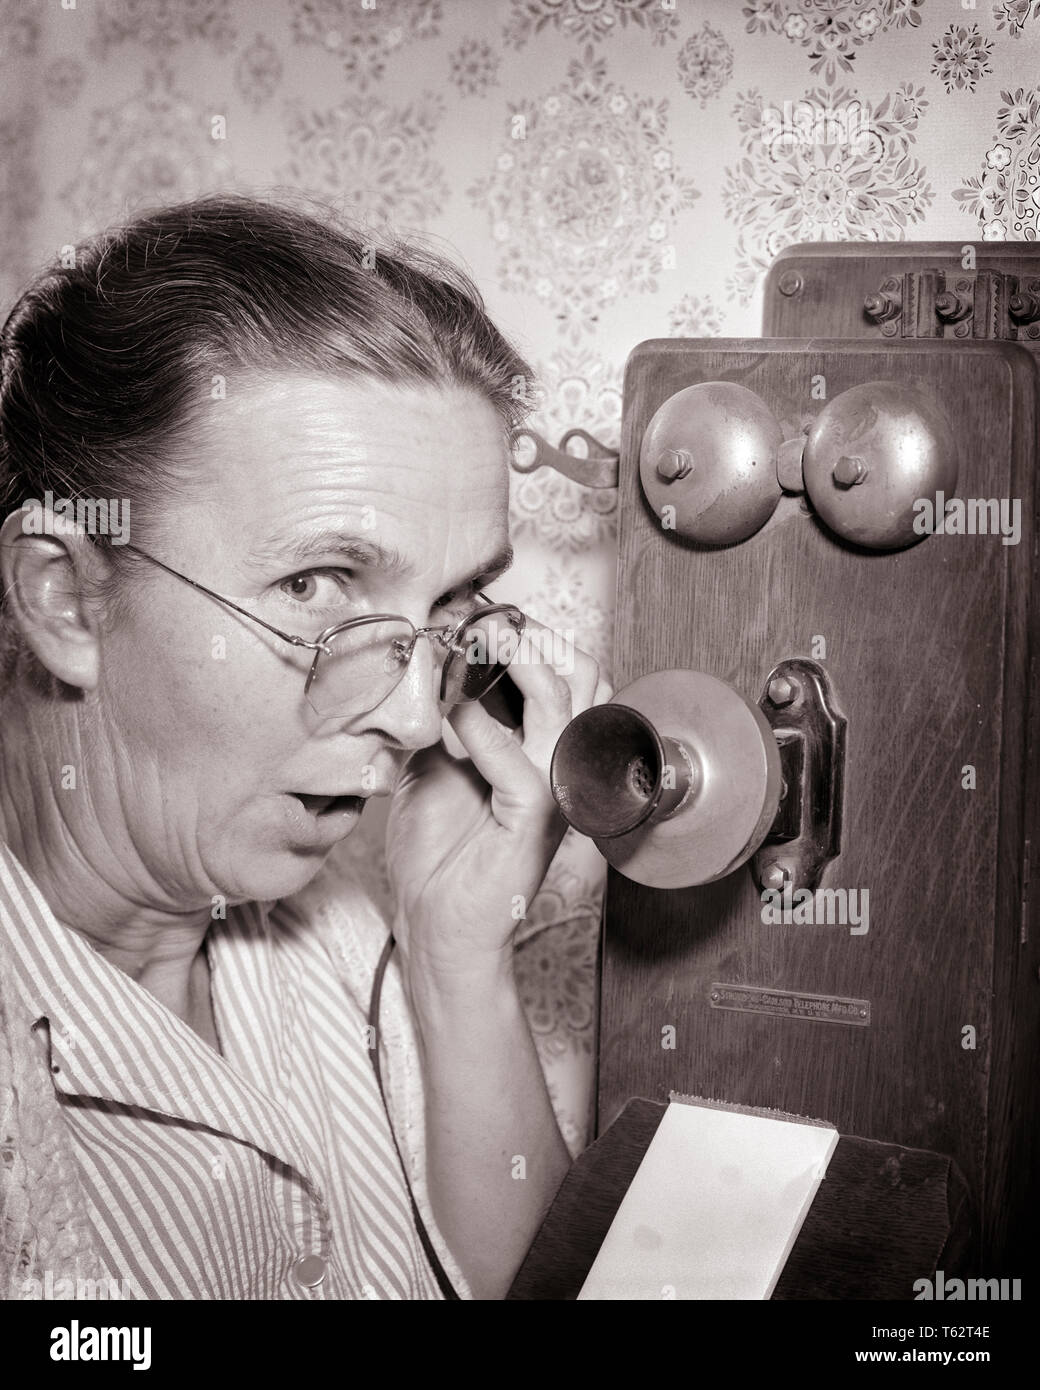 1930er Jahre 1940er Jahre ältere, reife Frau auf Kamera sprechen klatschen auf ALTMODISCHE HOLZ- KURBEL WAND TELEFON-bt 00141 CAM001 HARS KOMMUNIKATION KOPIEREN PLATZ DAMEN PERSONEN VERTRAUEN BRILLEN KLATSCHEN älterer Erwachsener mittleren Alters B&W AUGENKONTAKT SENIOR FRAU Frau mittleren Alters OLDSTERS KOPF UND SCHULTERN ALTEM AUFREGUNG FORTSCHRITTE ERHOLUNG CAM001 TELEFONE ÄLTESTEN ANSCHLUSS TELEFONE SCHWARZ UND WEISS KAUKASISCHEN ETHNIE ALTMODISCHE ALTMODISCHE Verdächtige in der Wand Stockfoto